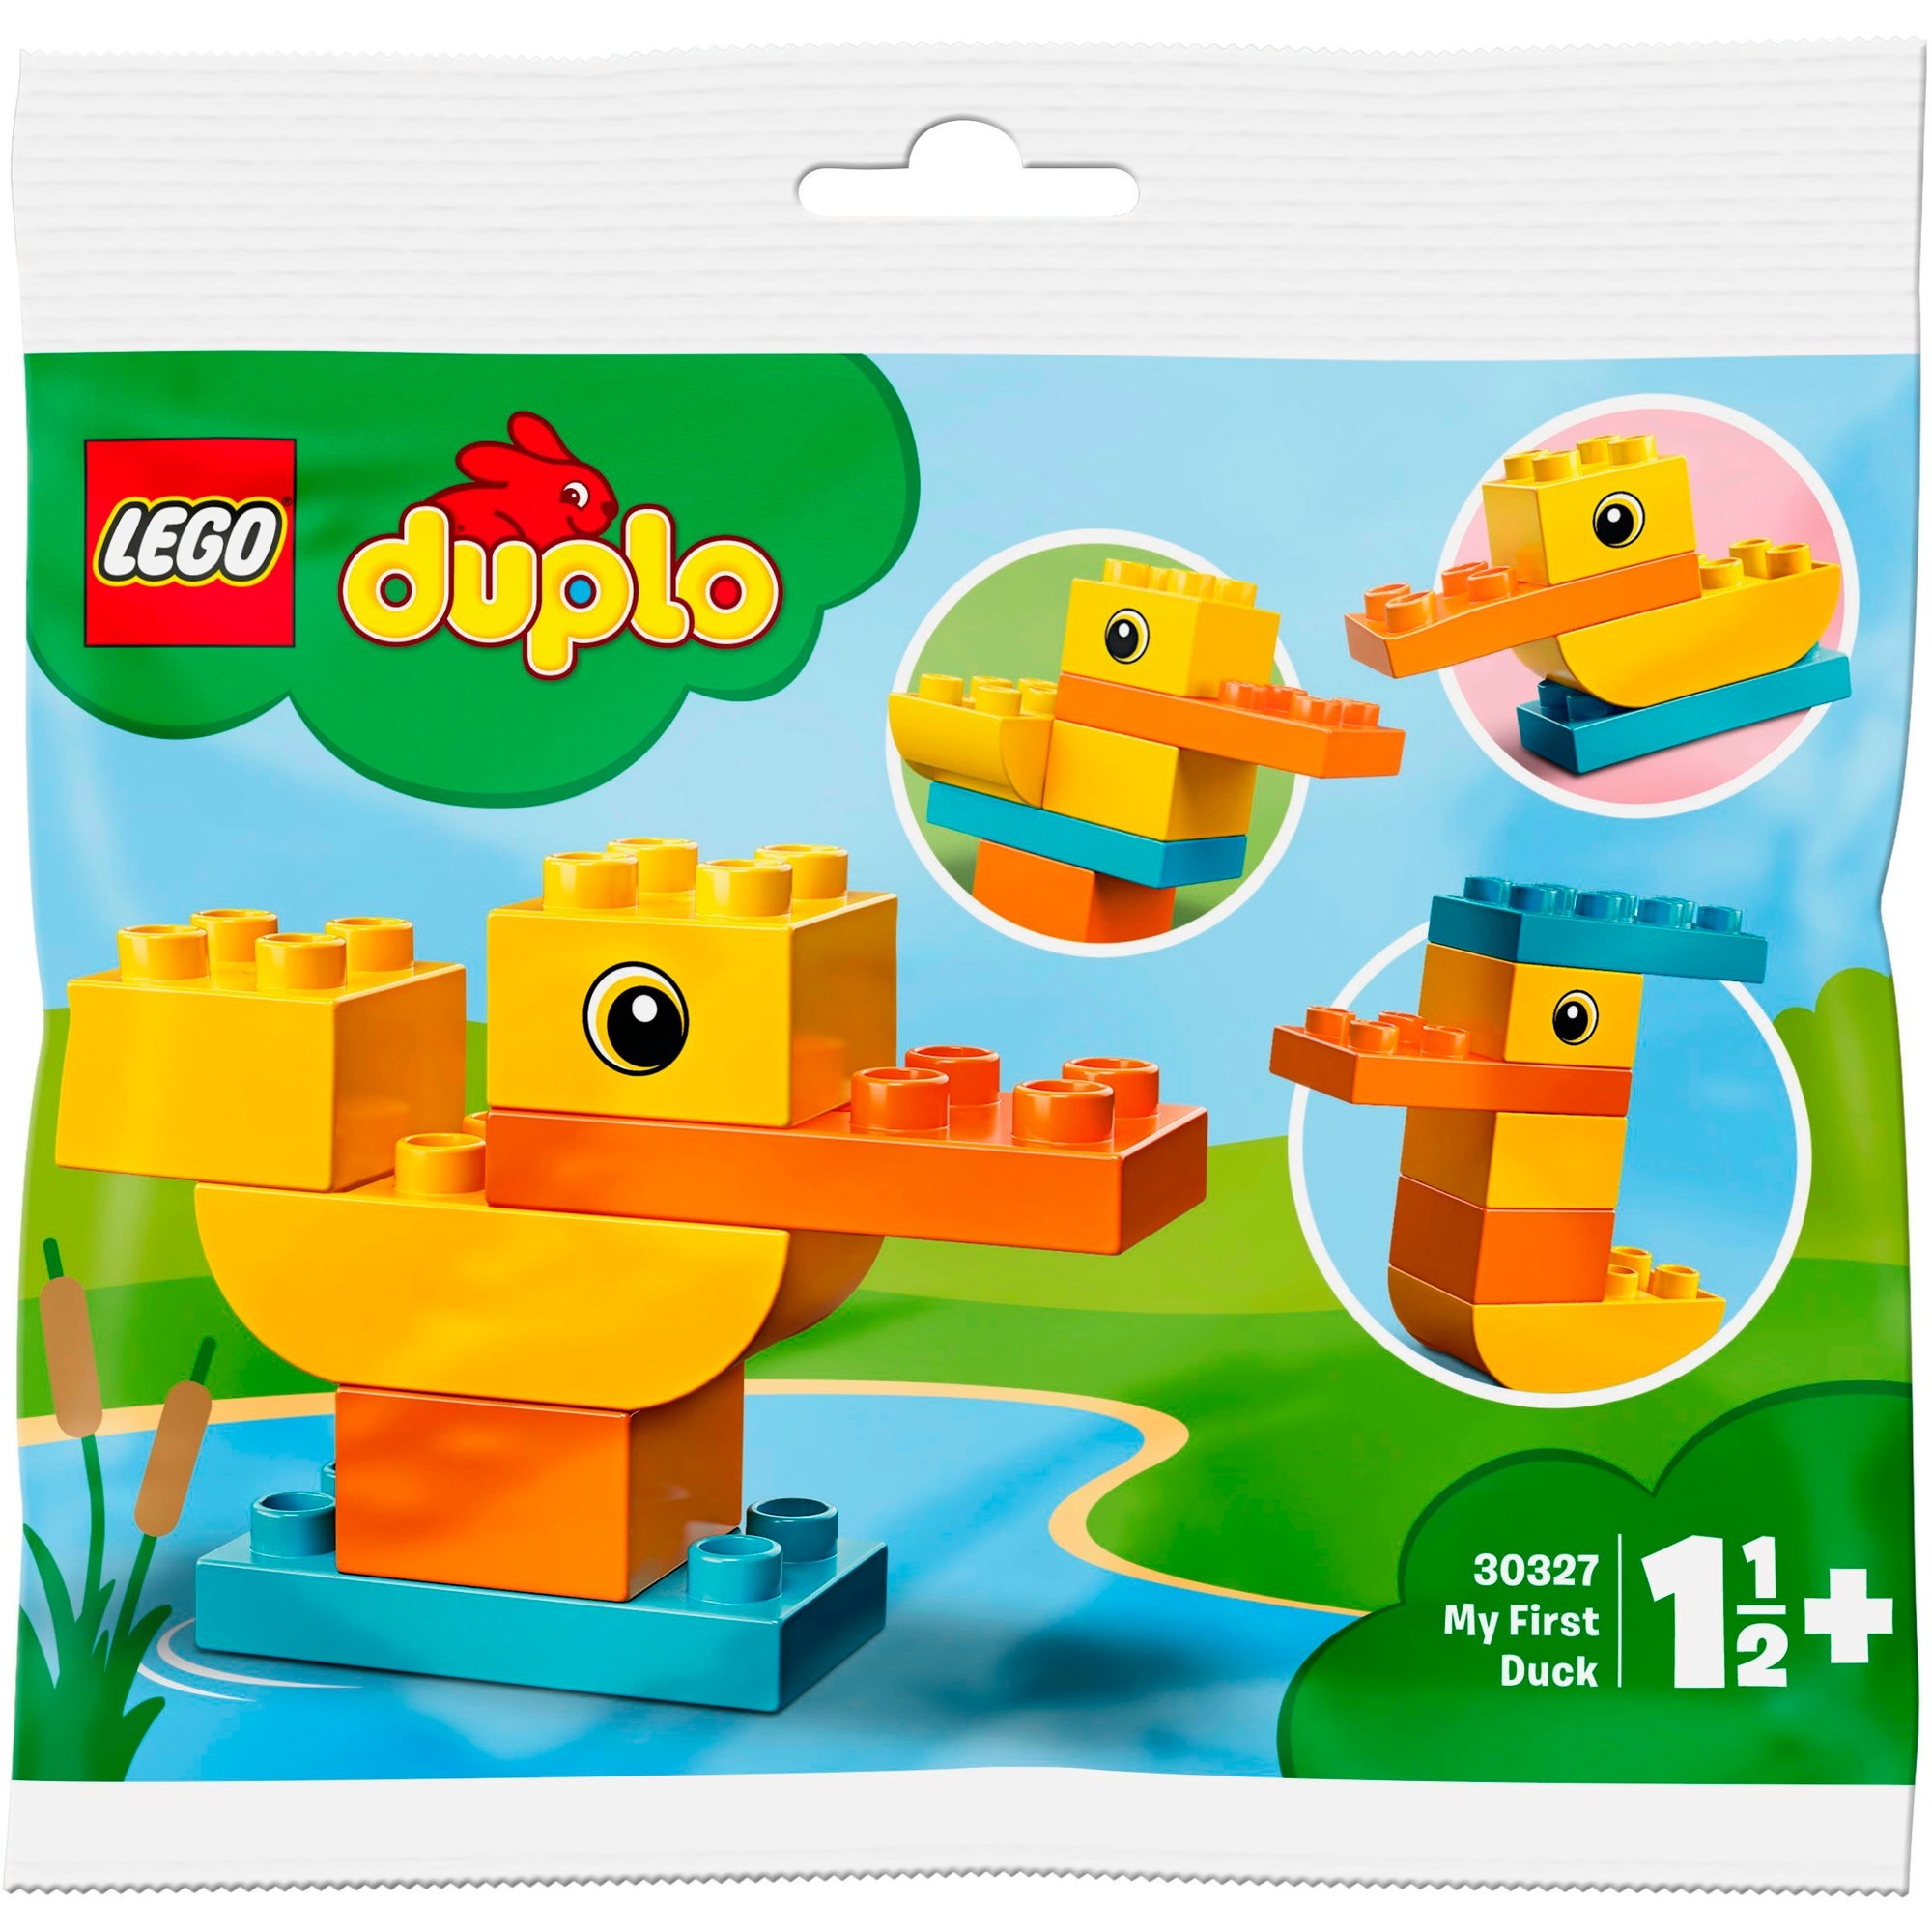 Spielzeug: Lego 30327 DUPLO My First Meine erste Ente